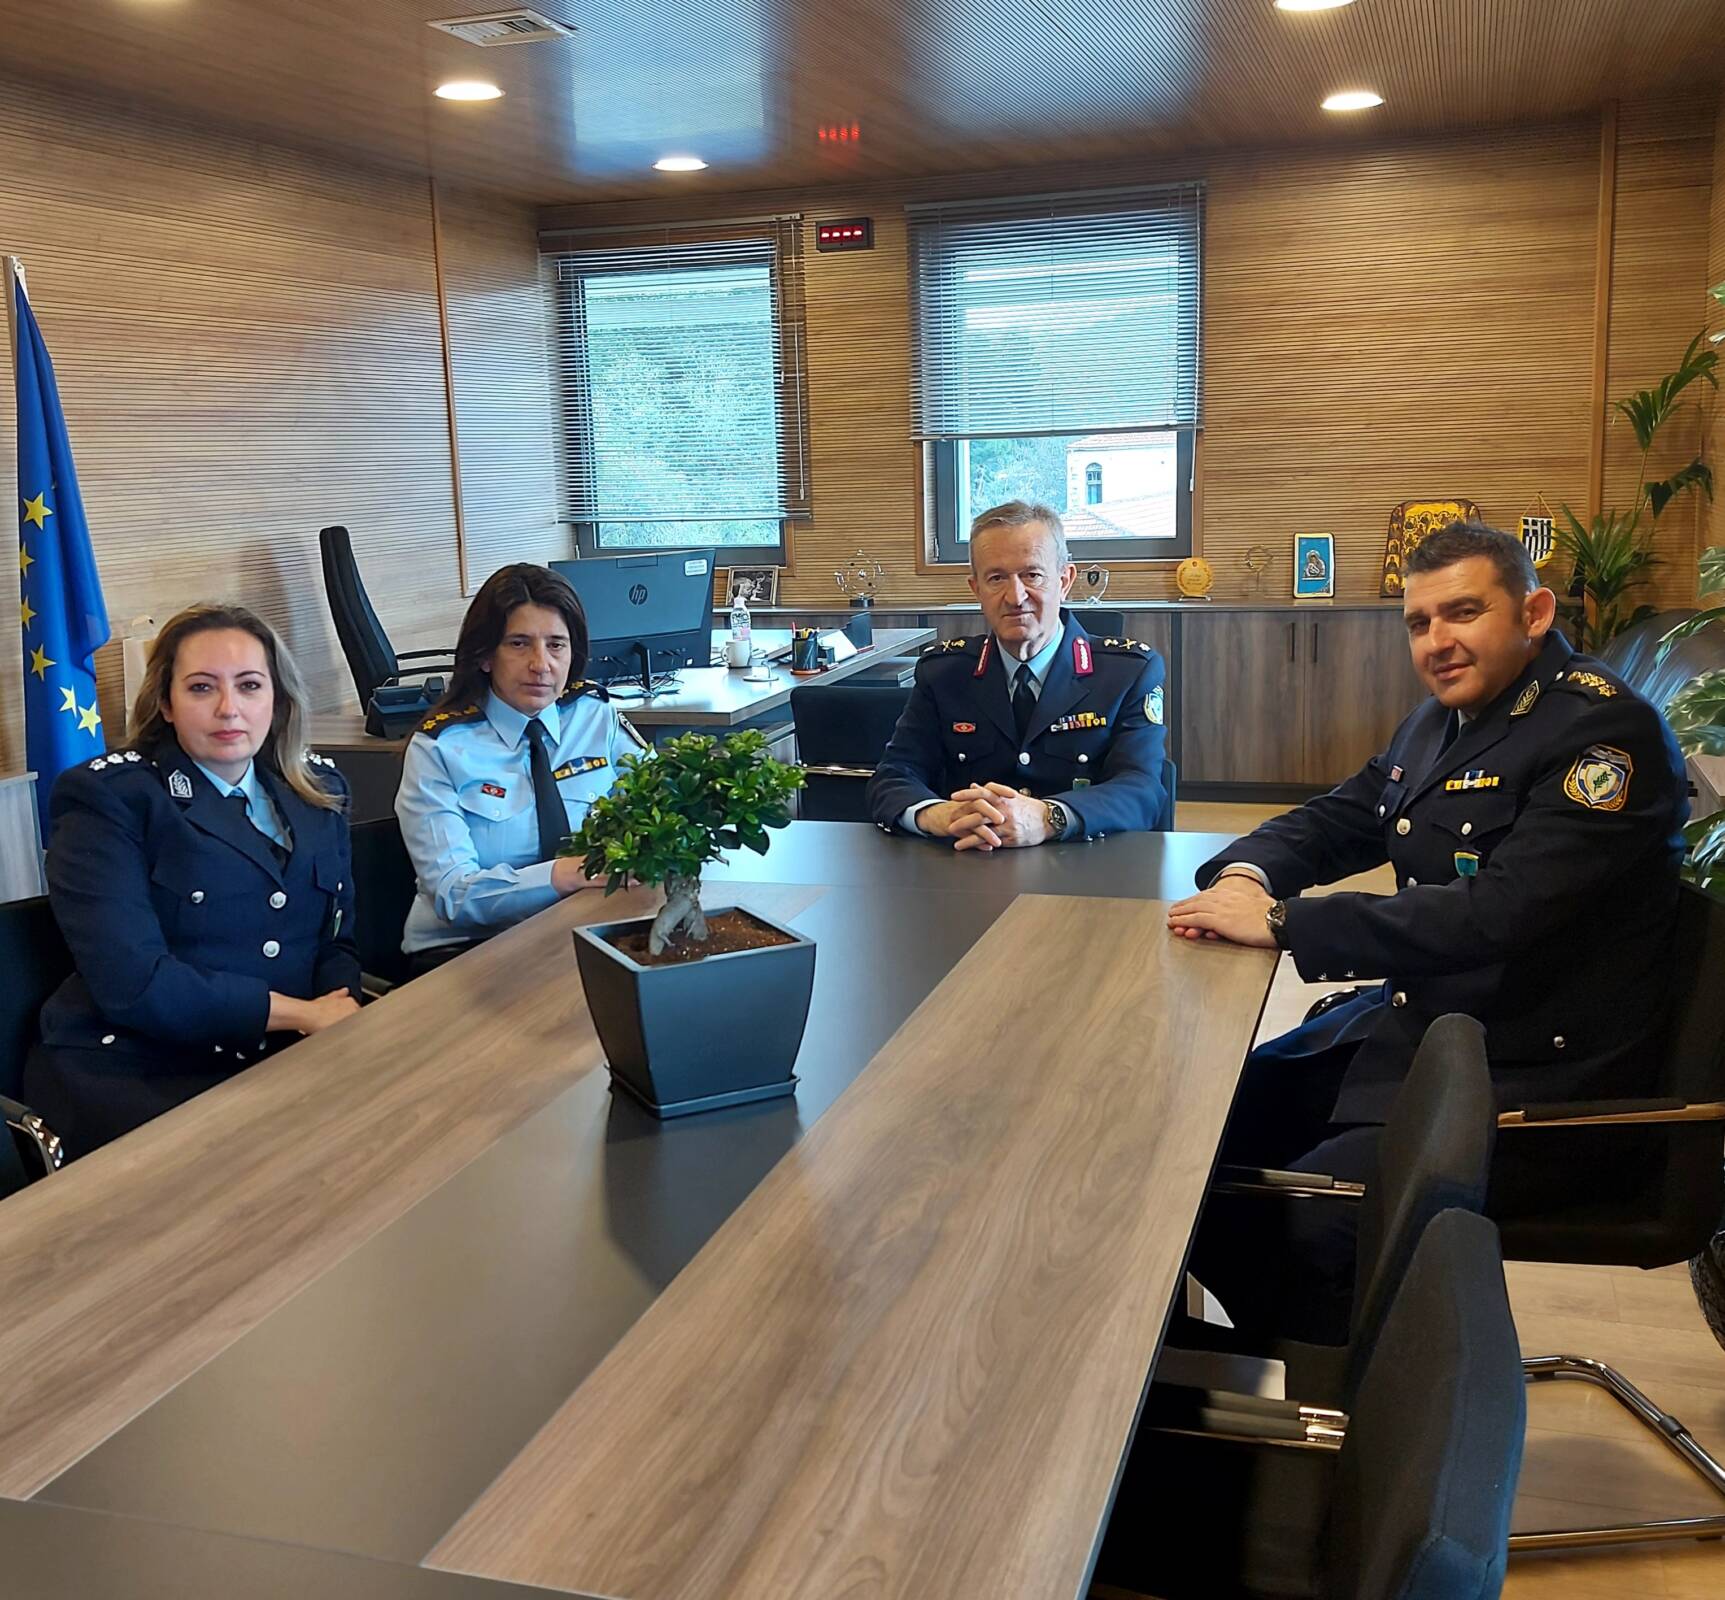 Επίσκεψη του Γενικού Περιφερειακού Αστυνομικού Διευθυντή Δυτικής Μακεδονίας στο Νέο Αστυνομικό Μέγαρο Καστοριάς